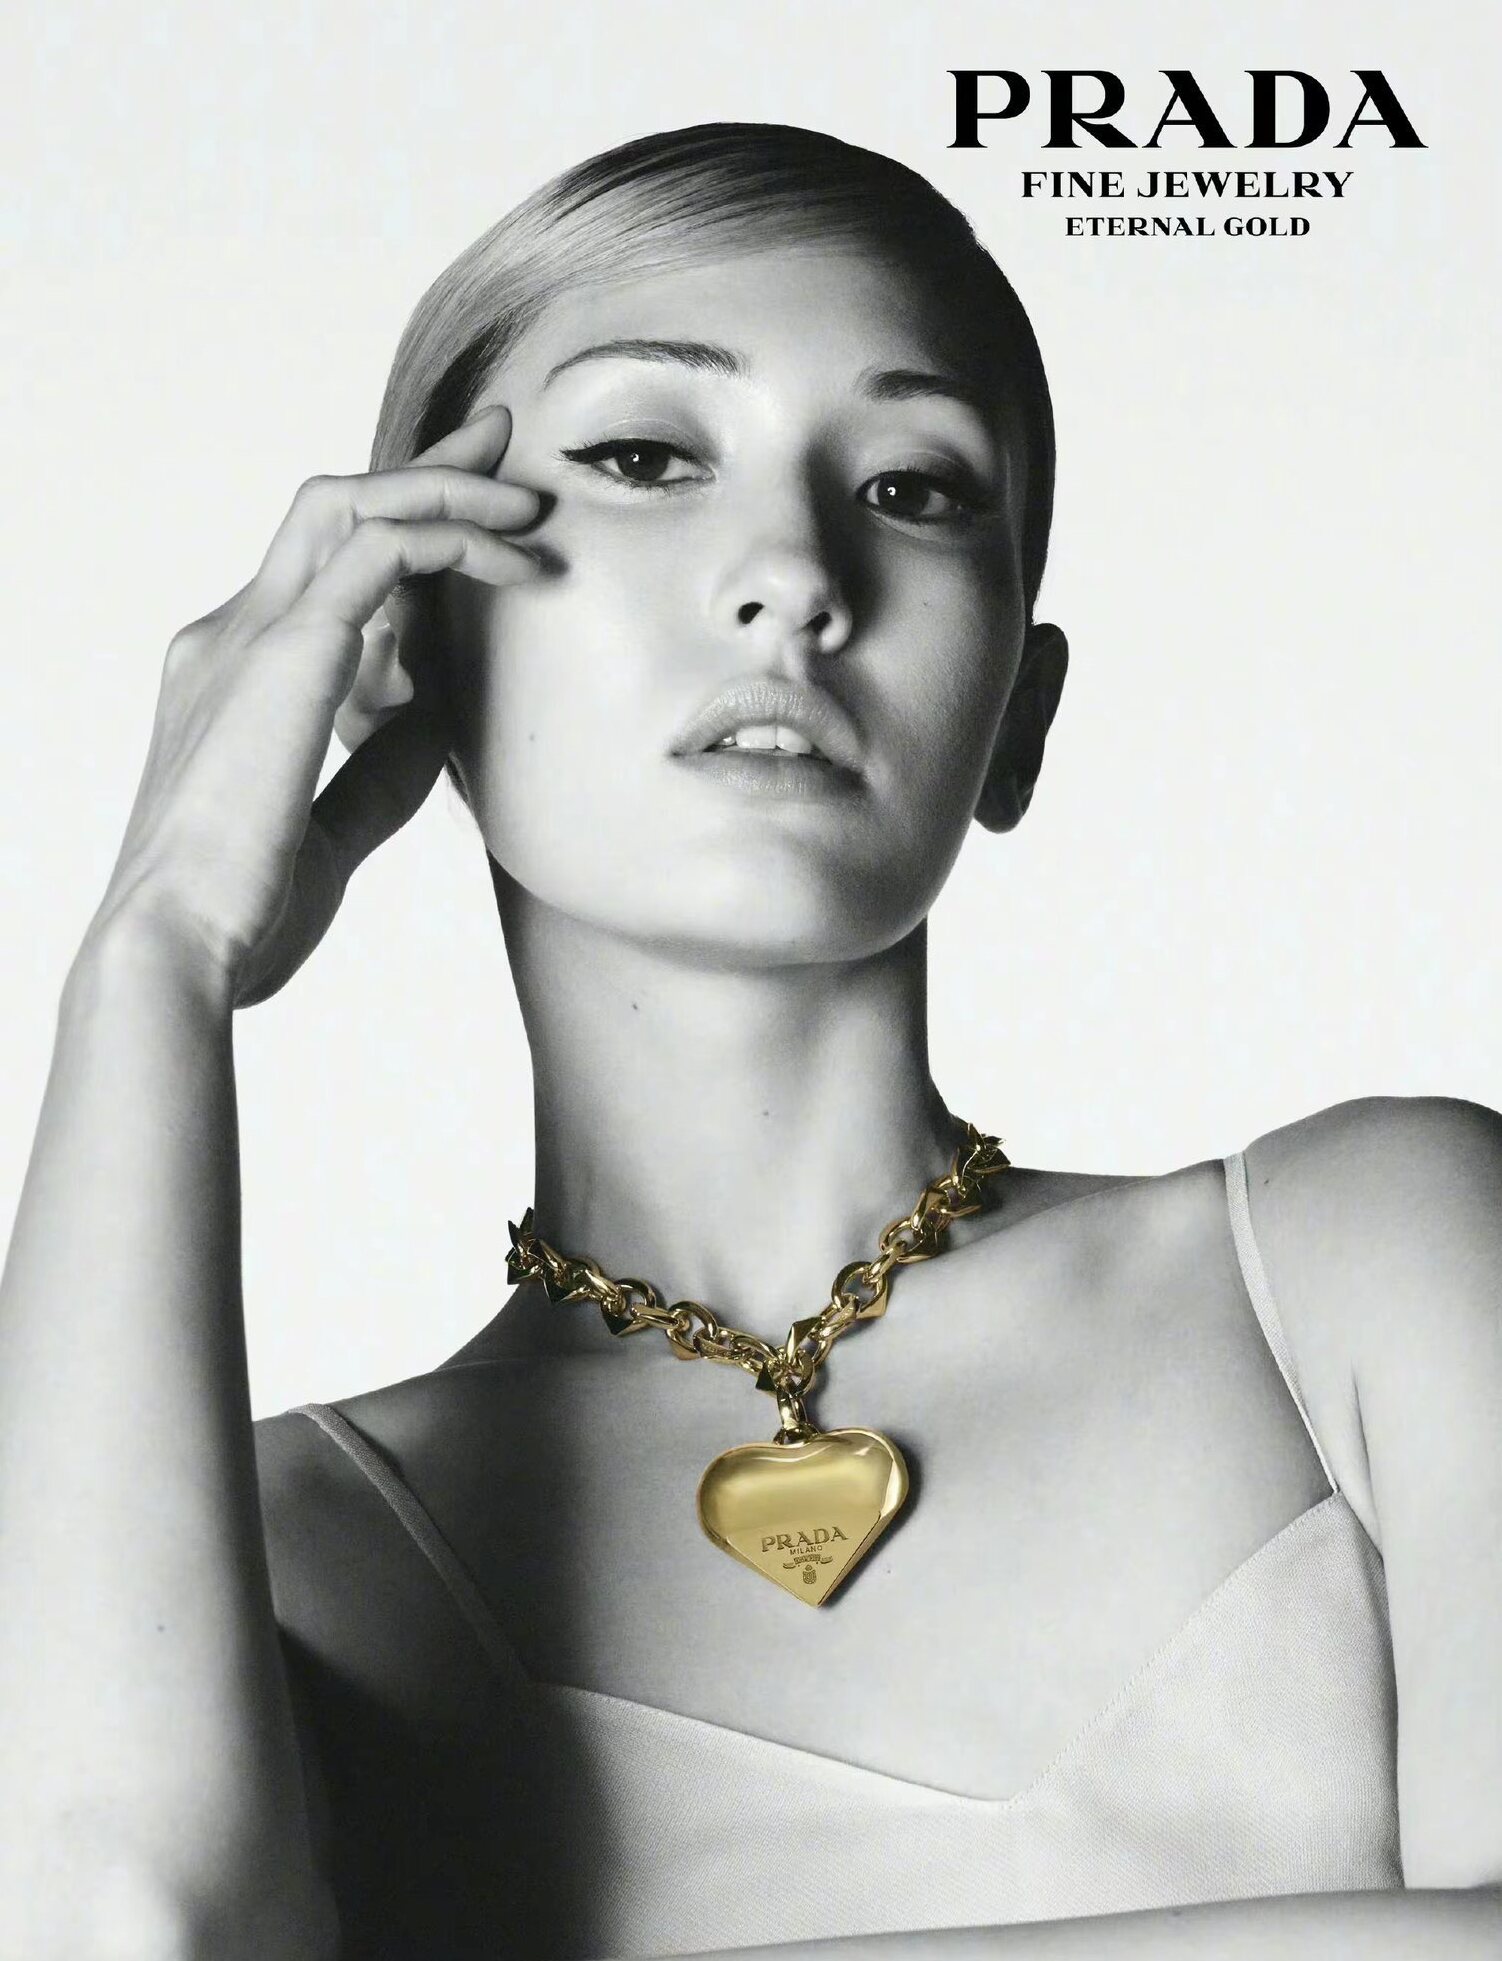 Somi trở thành gương mặt đại diện cho chiến dịch "Eternal Gold" của Prada